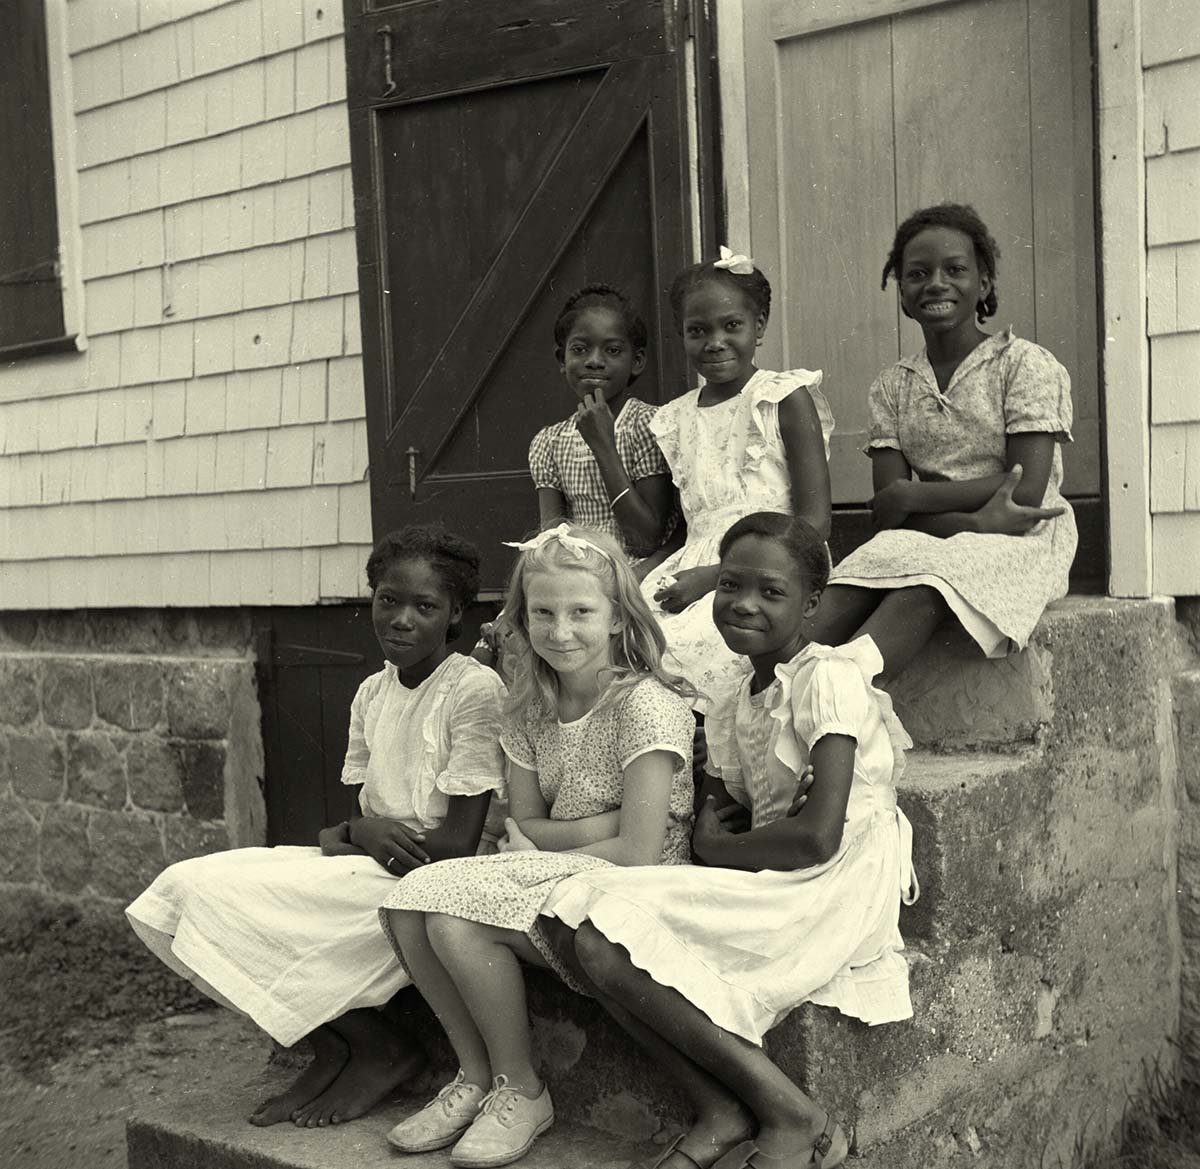 St John's. Girls on the steps of the school, 1947